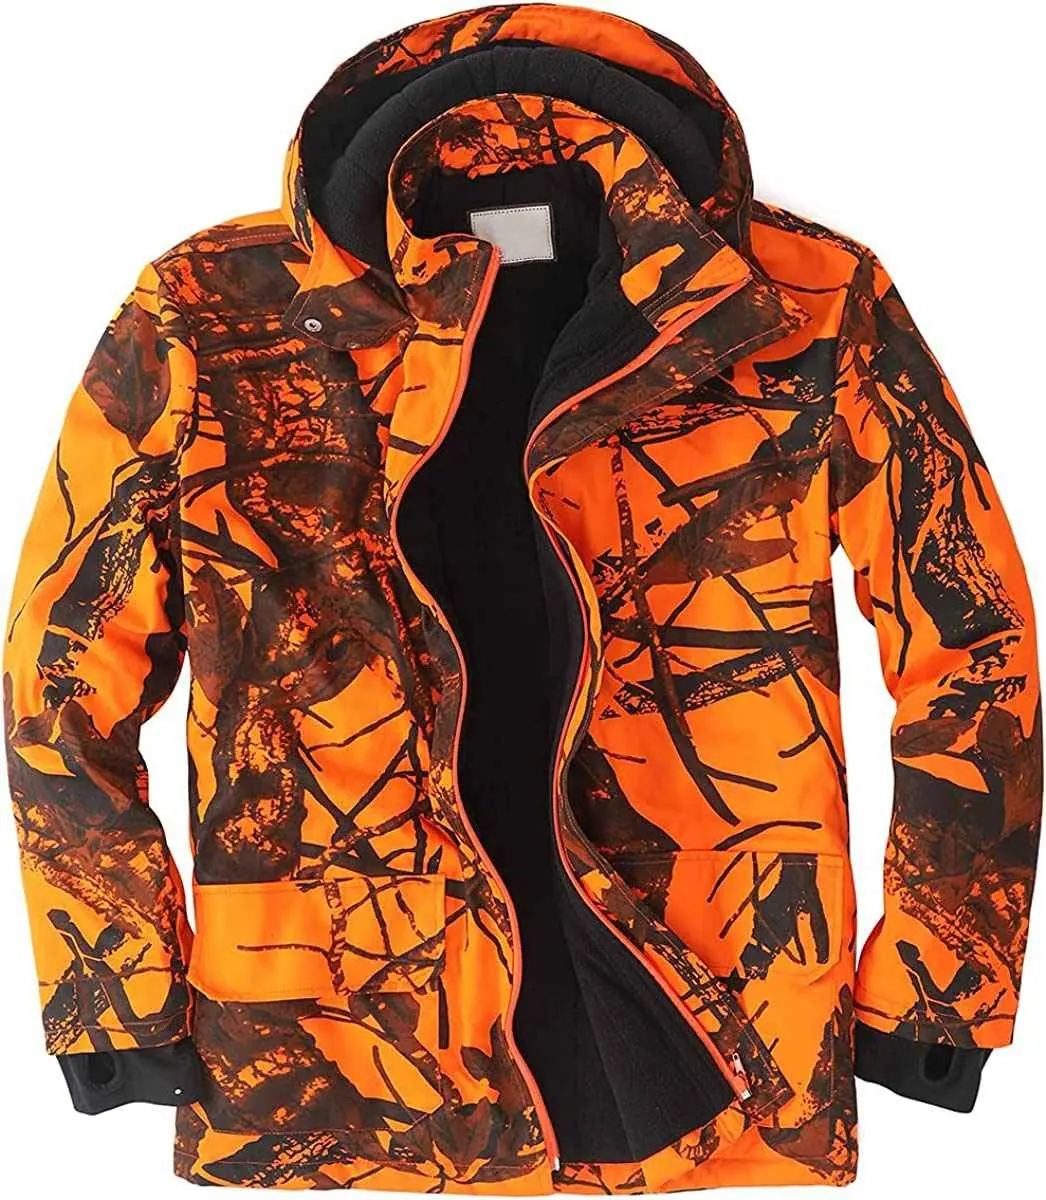 Jaket pakaian berburu kamuflase antiair musim dingin kustom harga grosir jaket berburu luar ruangan jaket berburu kecil